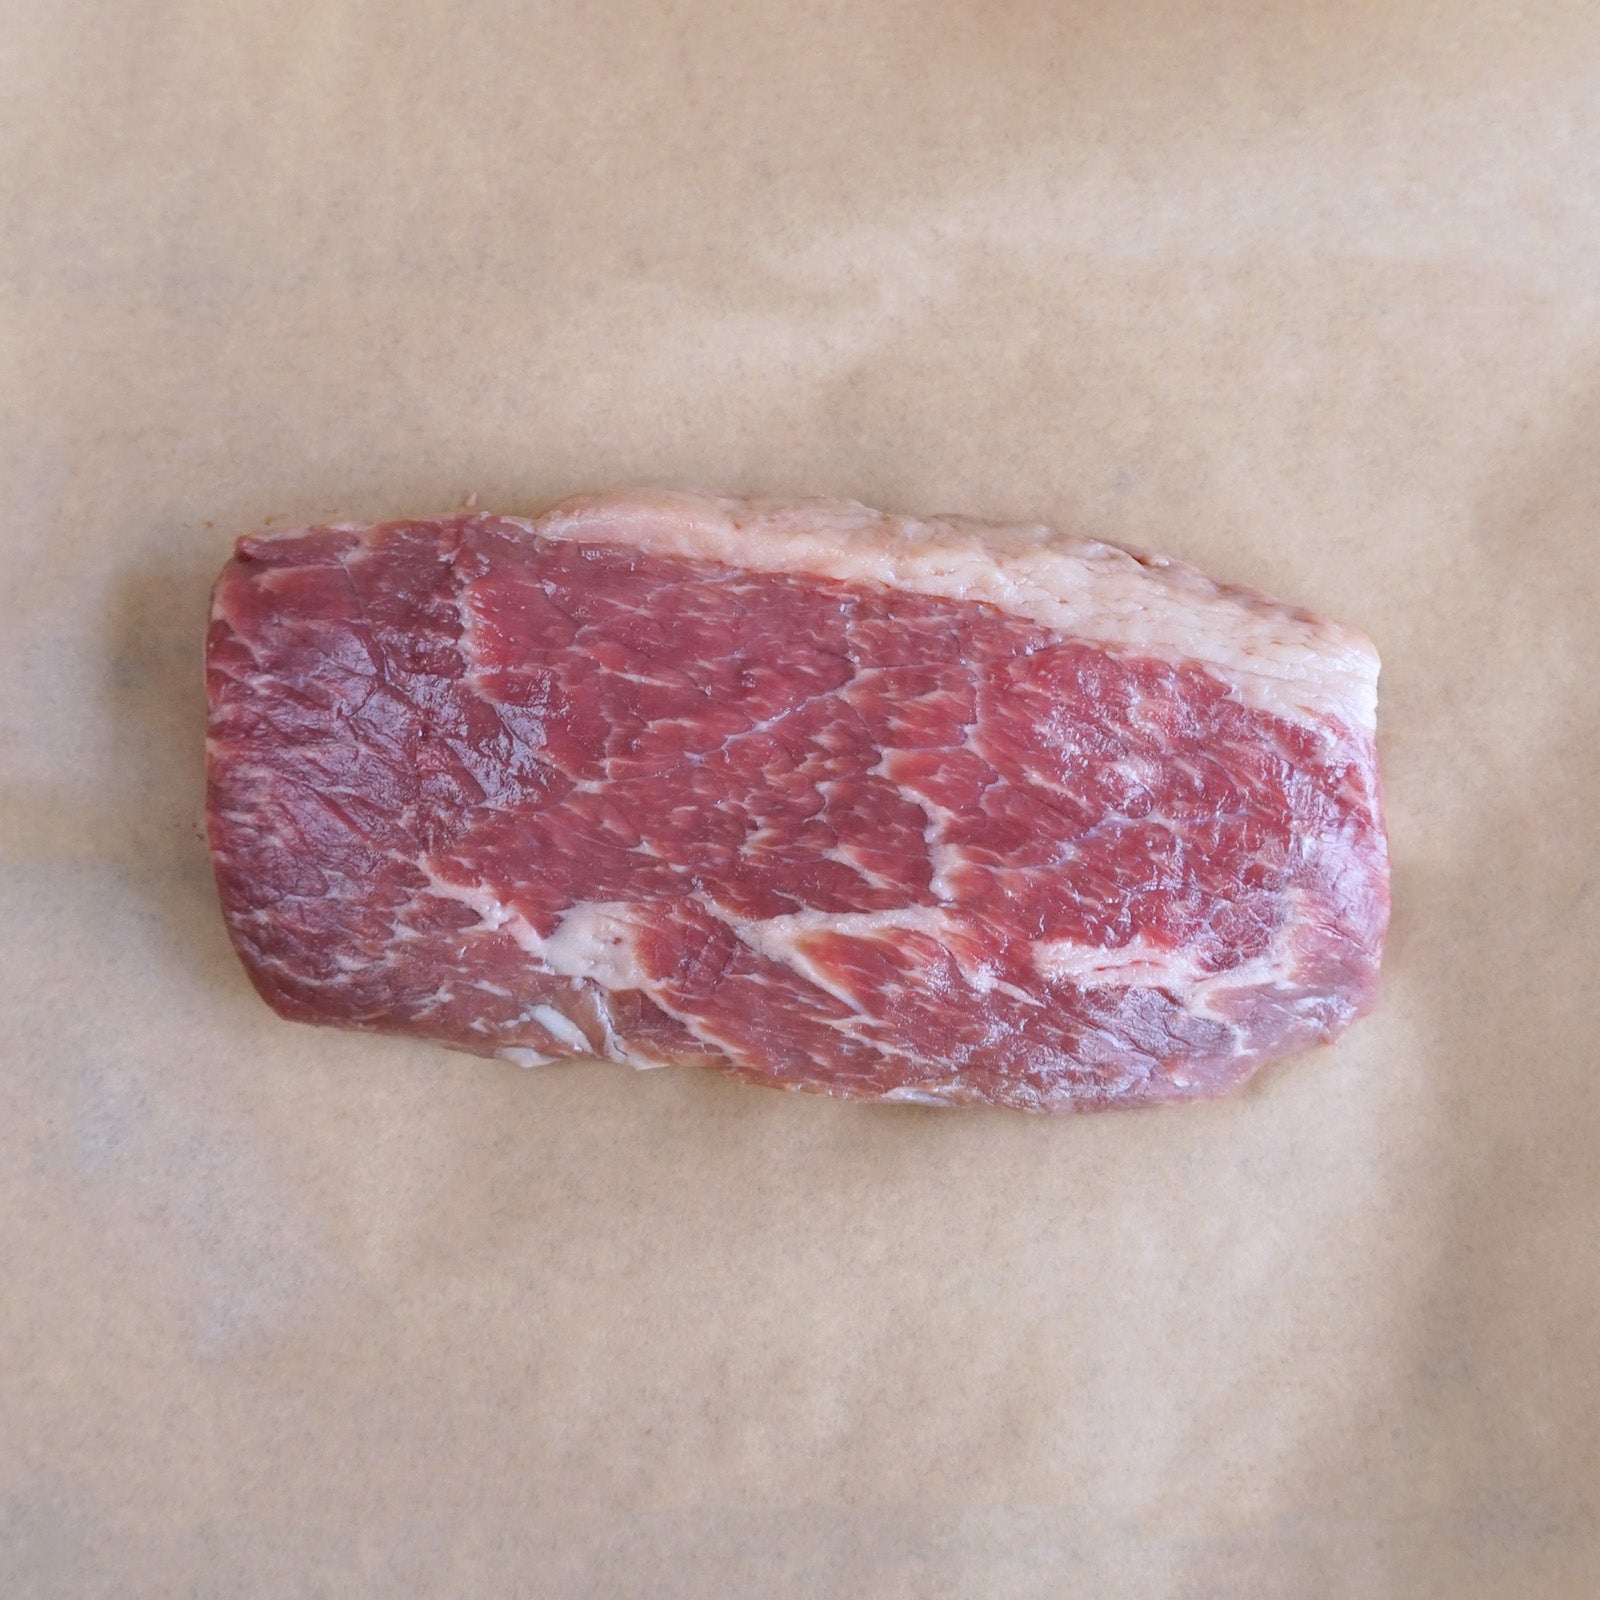 プレミアム グレインフェッドビーフ 霜降り 牛肉 イチボ モモ肉 ステーキ オーストラリア産 放牧牛 (300g) ホライズンファームズ